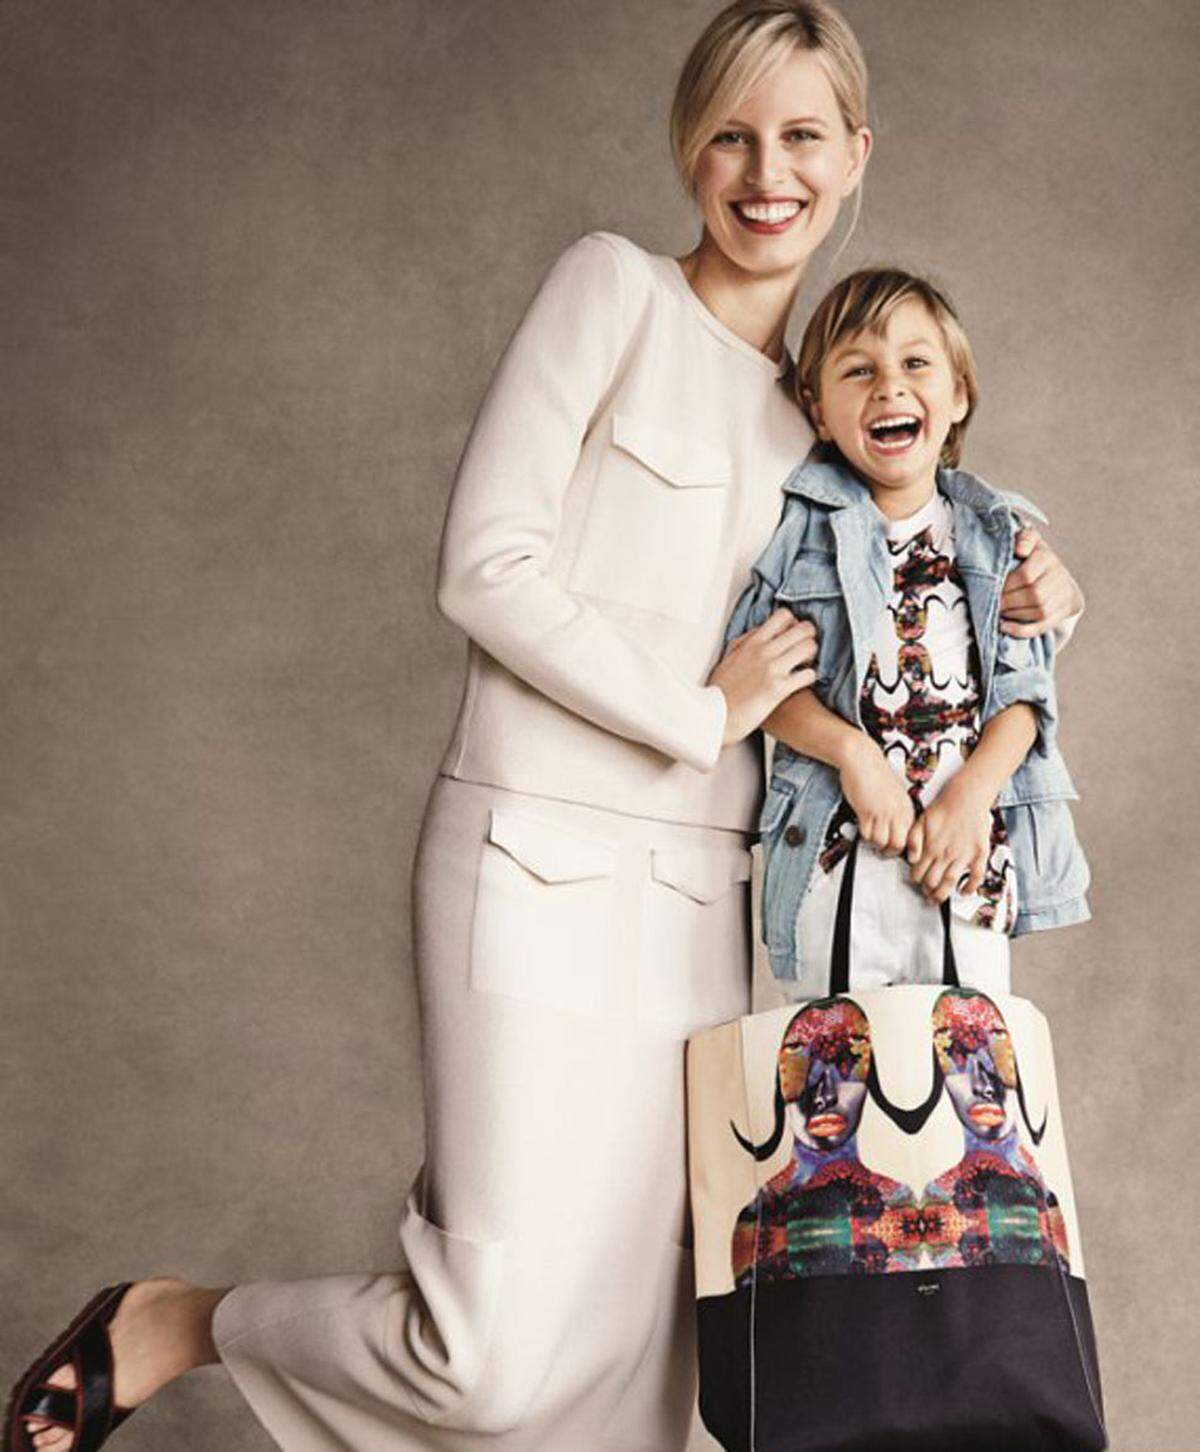 Die Chairty-Kollektion, die über Shopbob.com verkauft wird, wurde von bekannten Designern wie Victoria Bekcham, Miuccia Prada oder Donatella Versace entworfen. Auch Karolina Kurkova posiert mit ihrem Sohn Tobin für den guten Zweck.